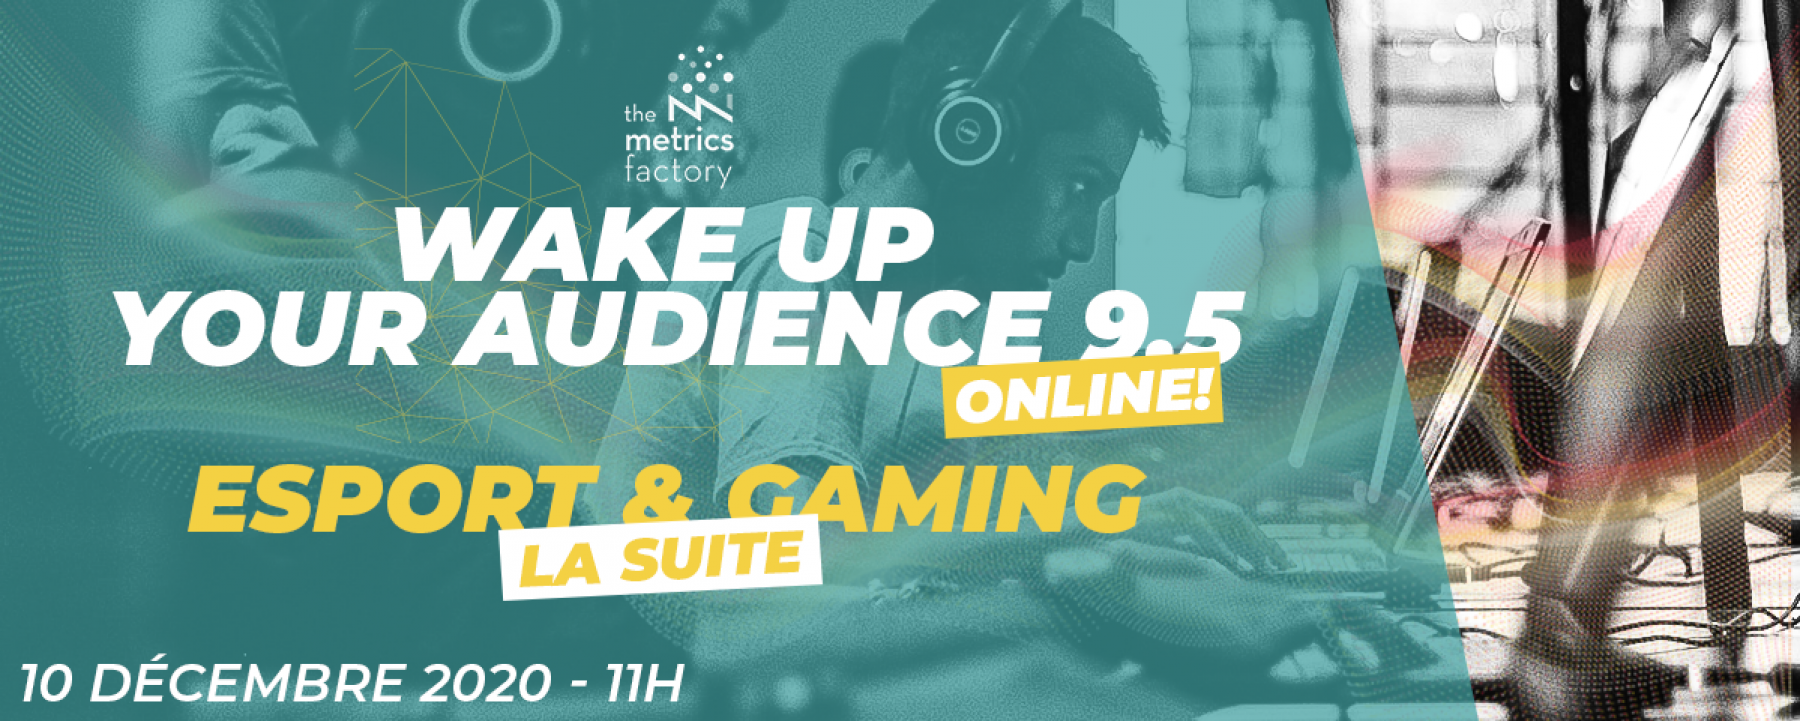 Wake Up Your Audience 9.5 : Esport & Gaming La Suite, un webinar organisé par The Metrics Factory le 10 décembre